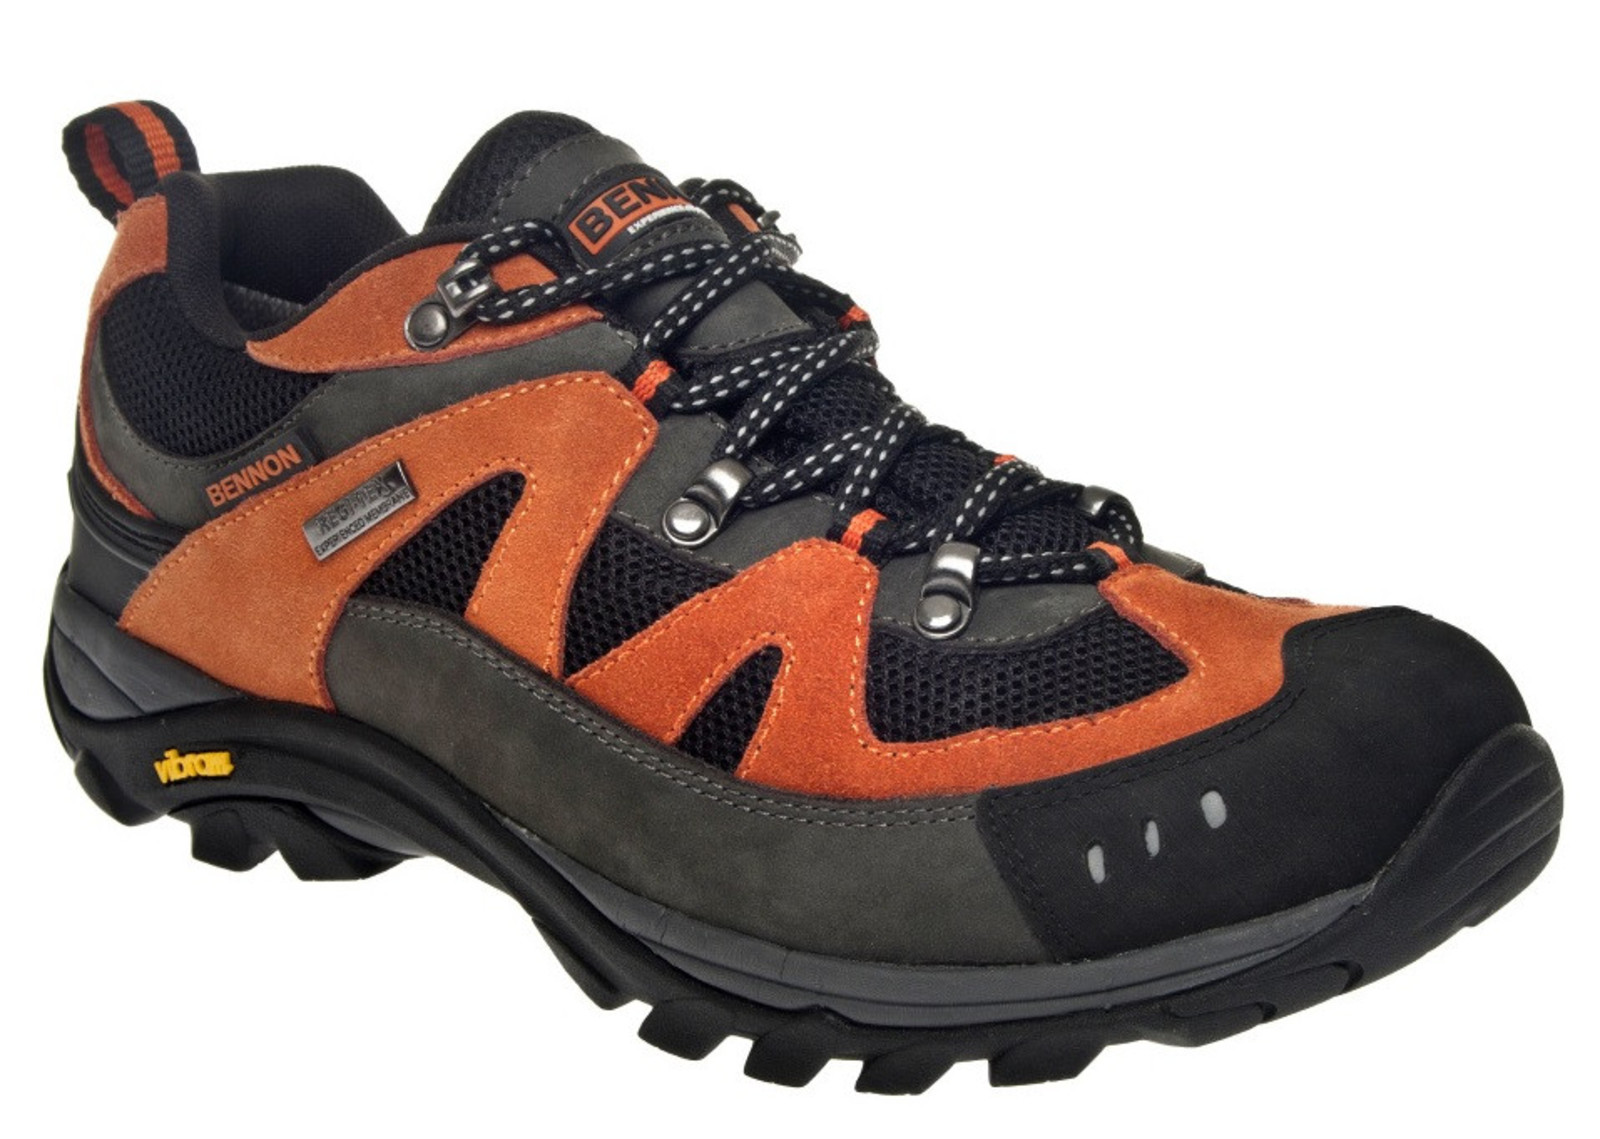 Outdoorové topánky Bennon Emperado s membránou - veľkosť: 39, farba: sivá/oranžová